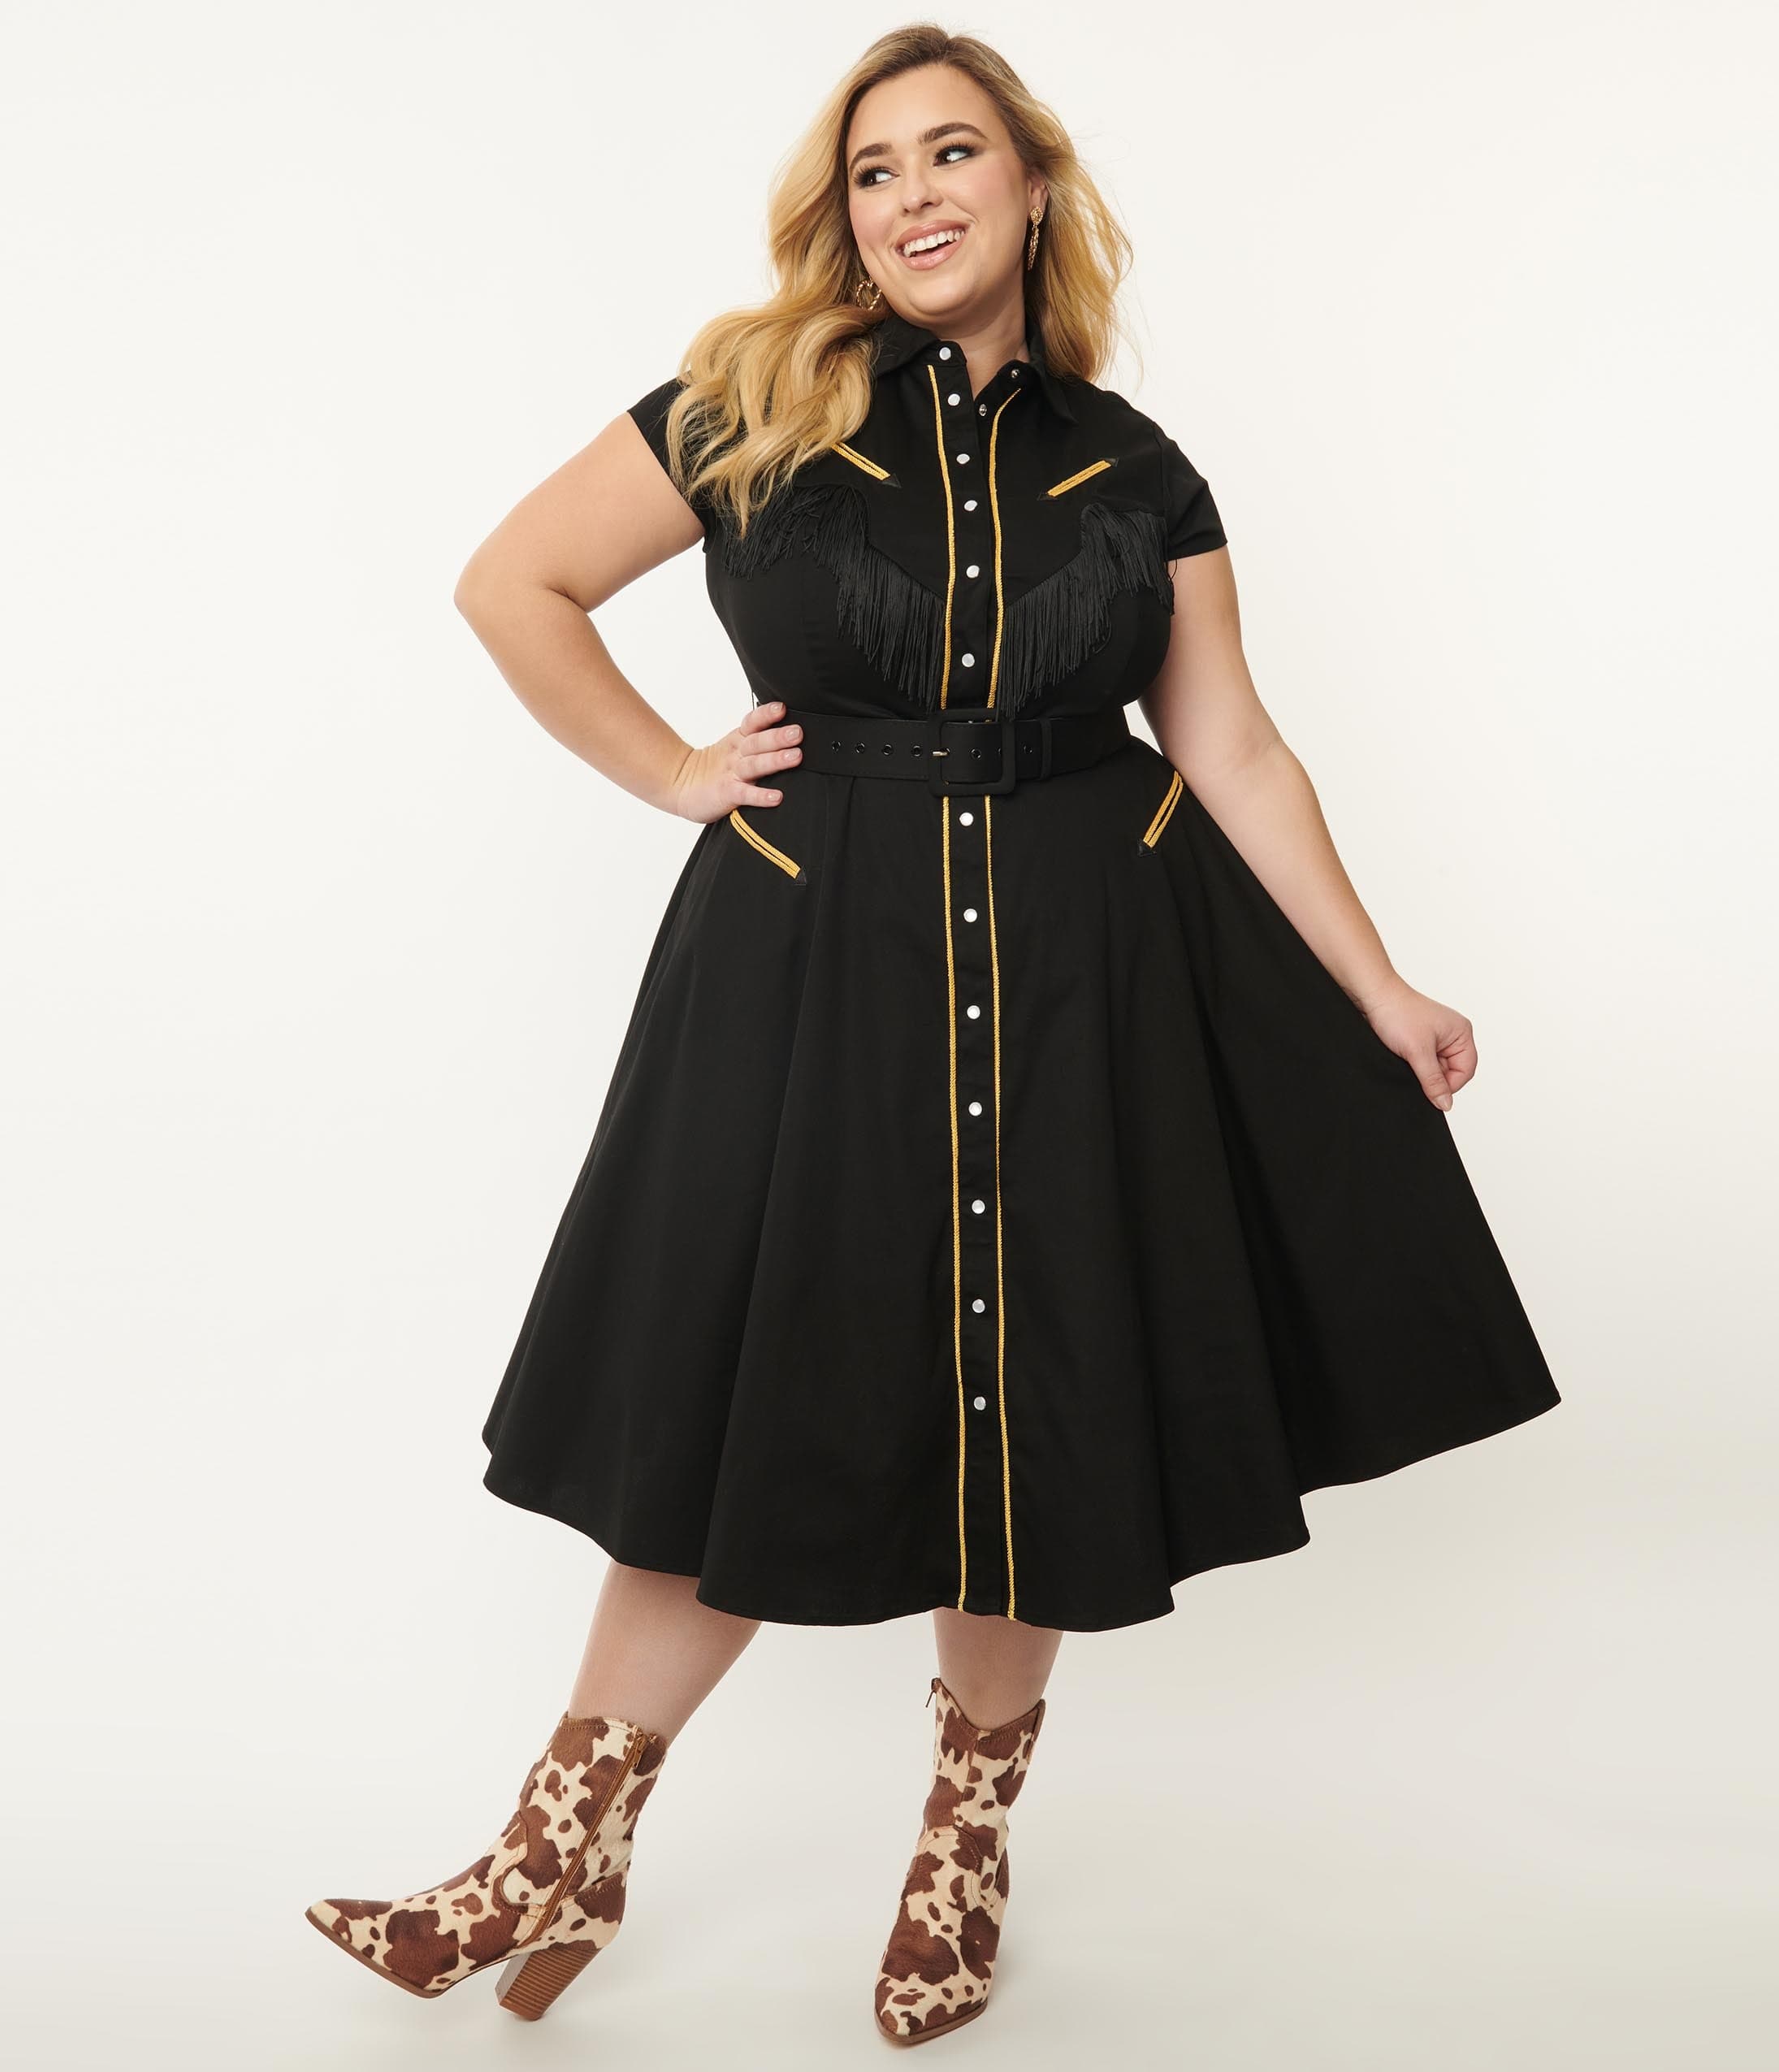 Unique Vintage 1950s Style Black Ruffled Petticoat Crinoline